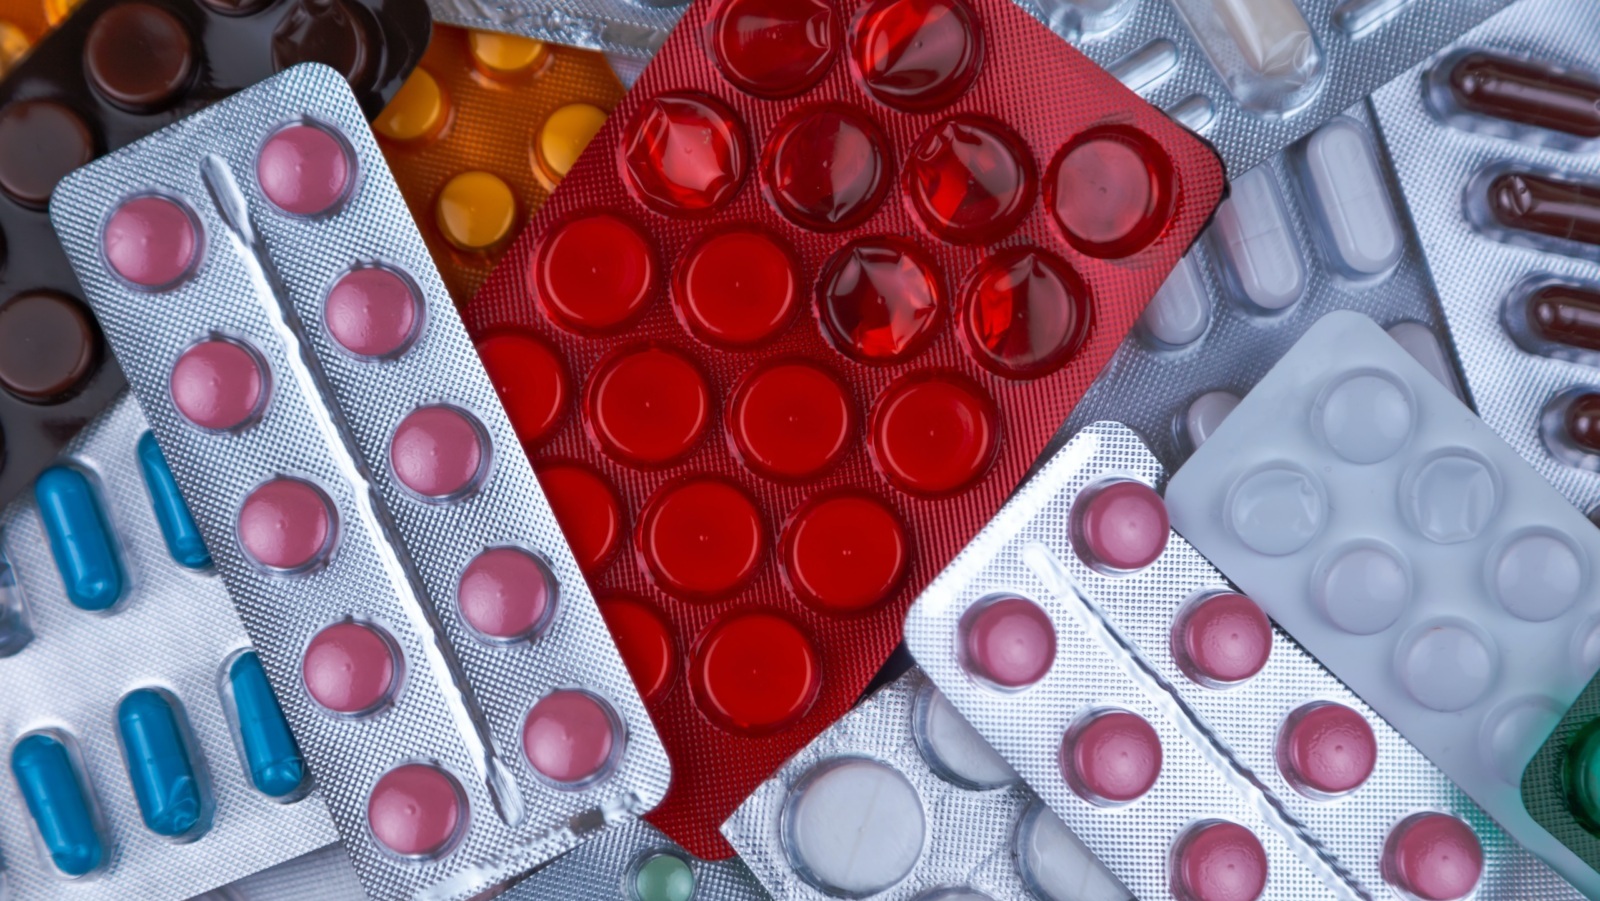 Prescription drugs in blister packs